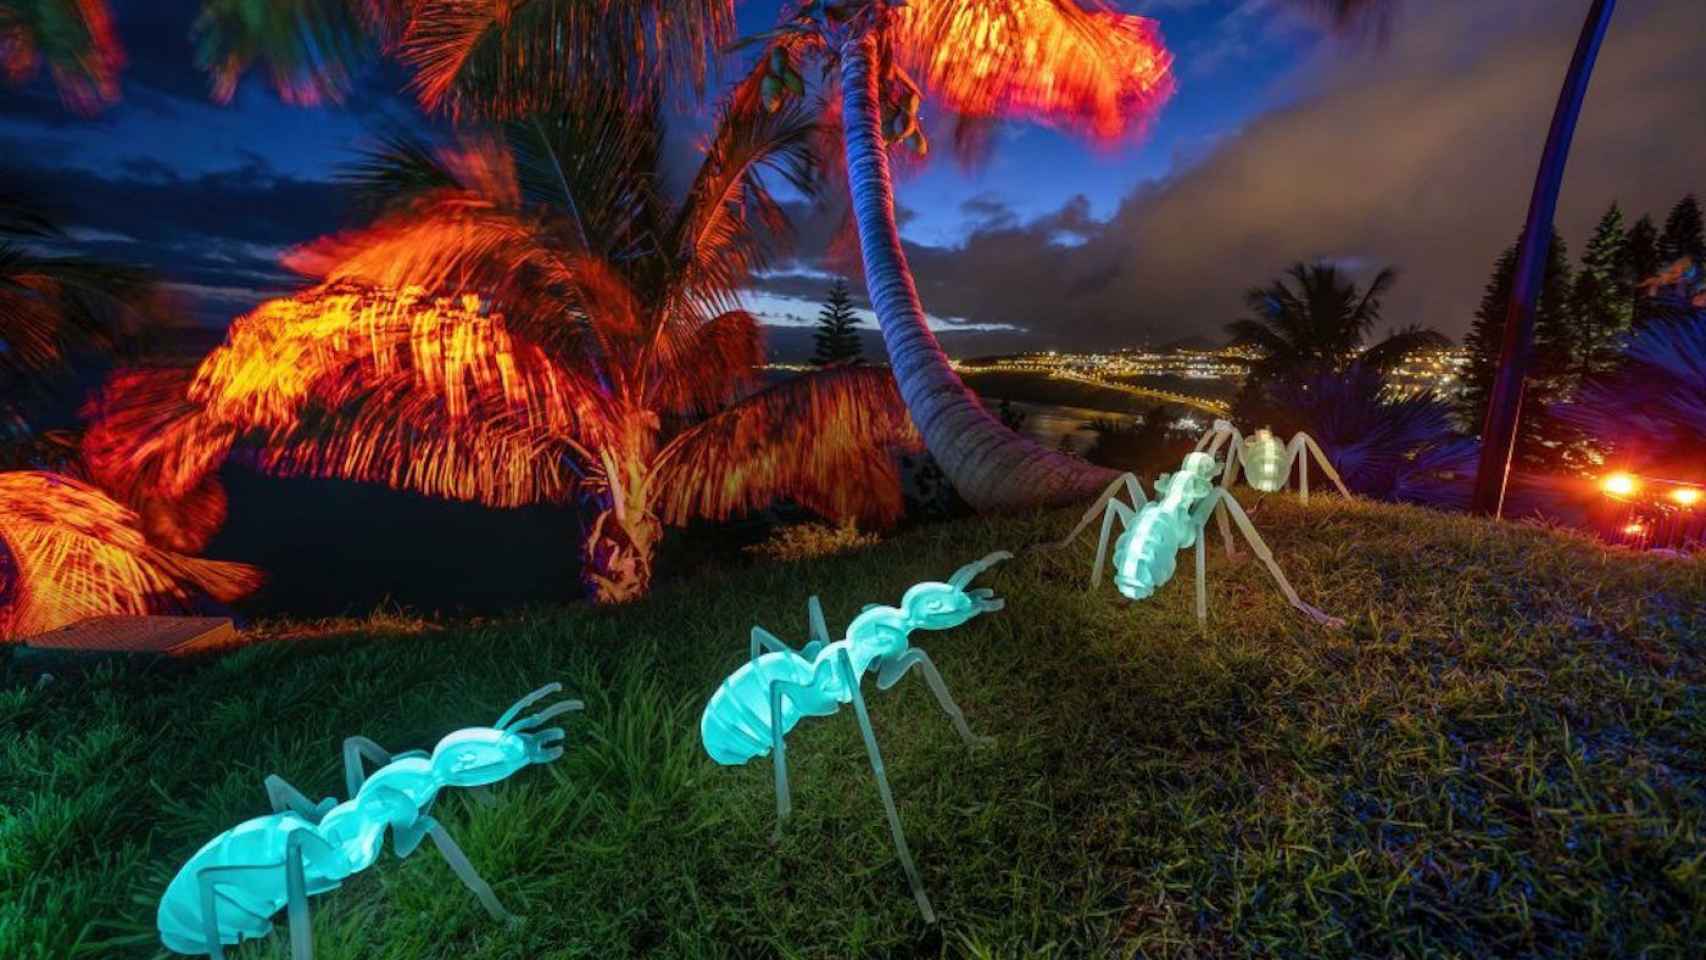 Hormigas iluminadas en 'Natura Encesa', la experiencia lumínica de los Jardines de Pedralbes / GRUP BALAÑÁ